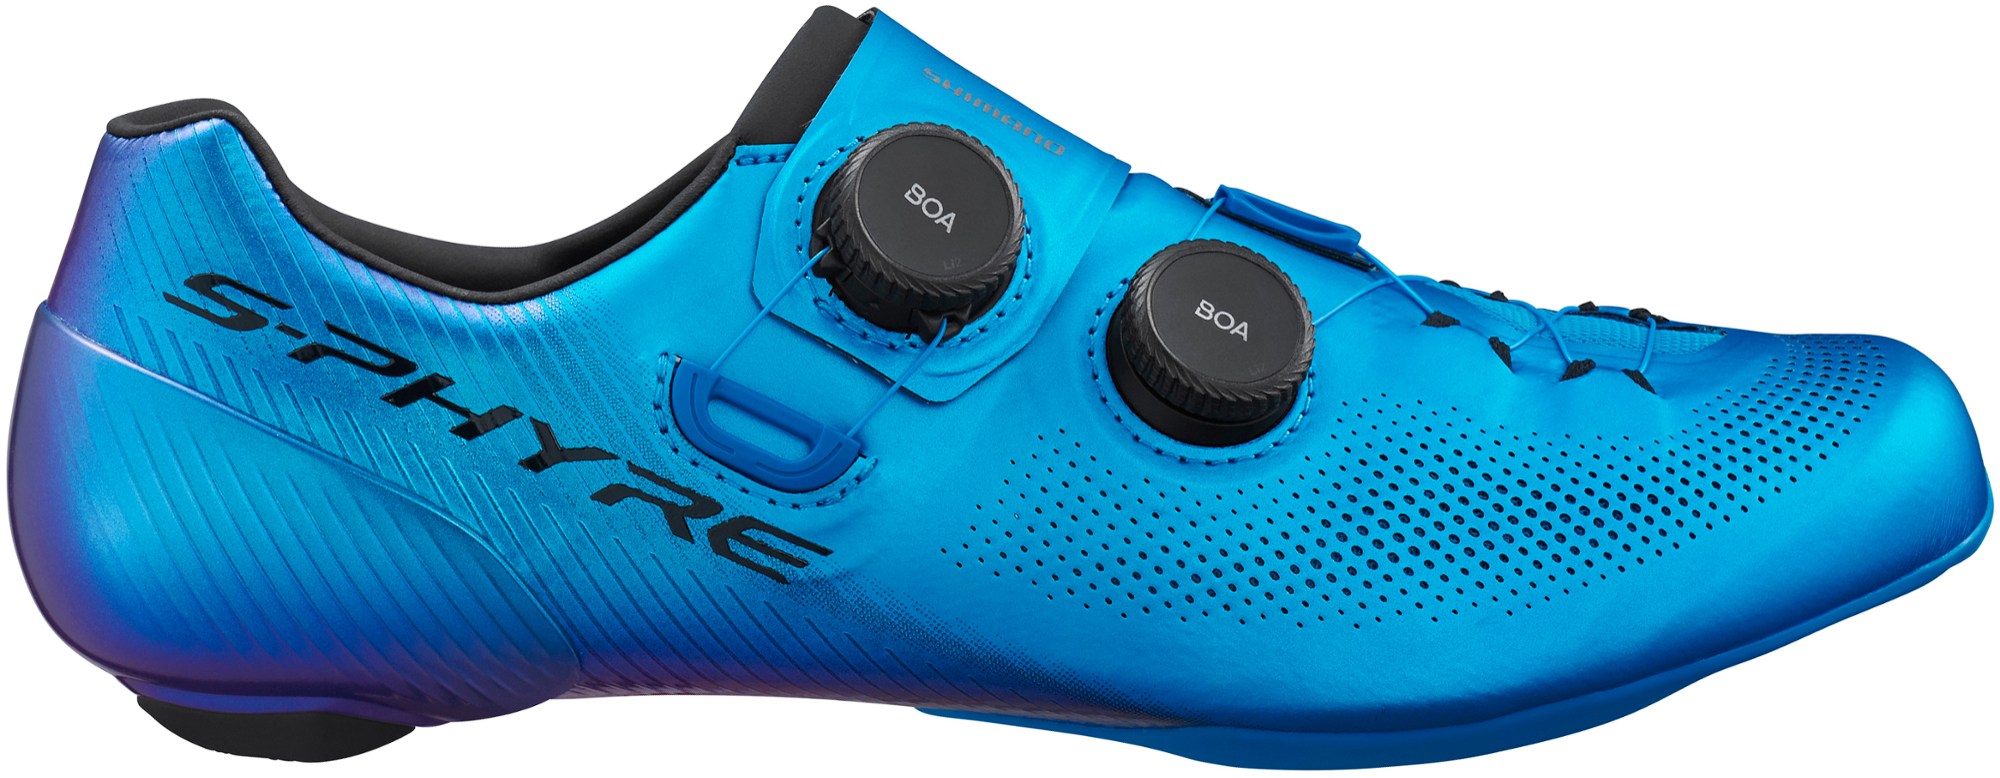 Велосипедная обувь RC9 — мужские Shimano, синий цена и фото